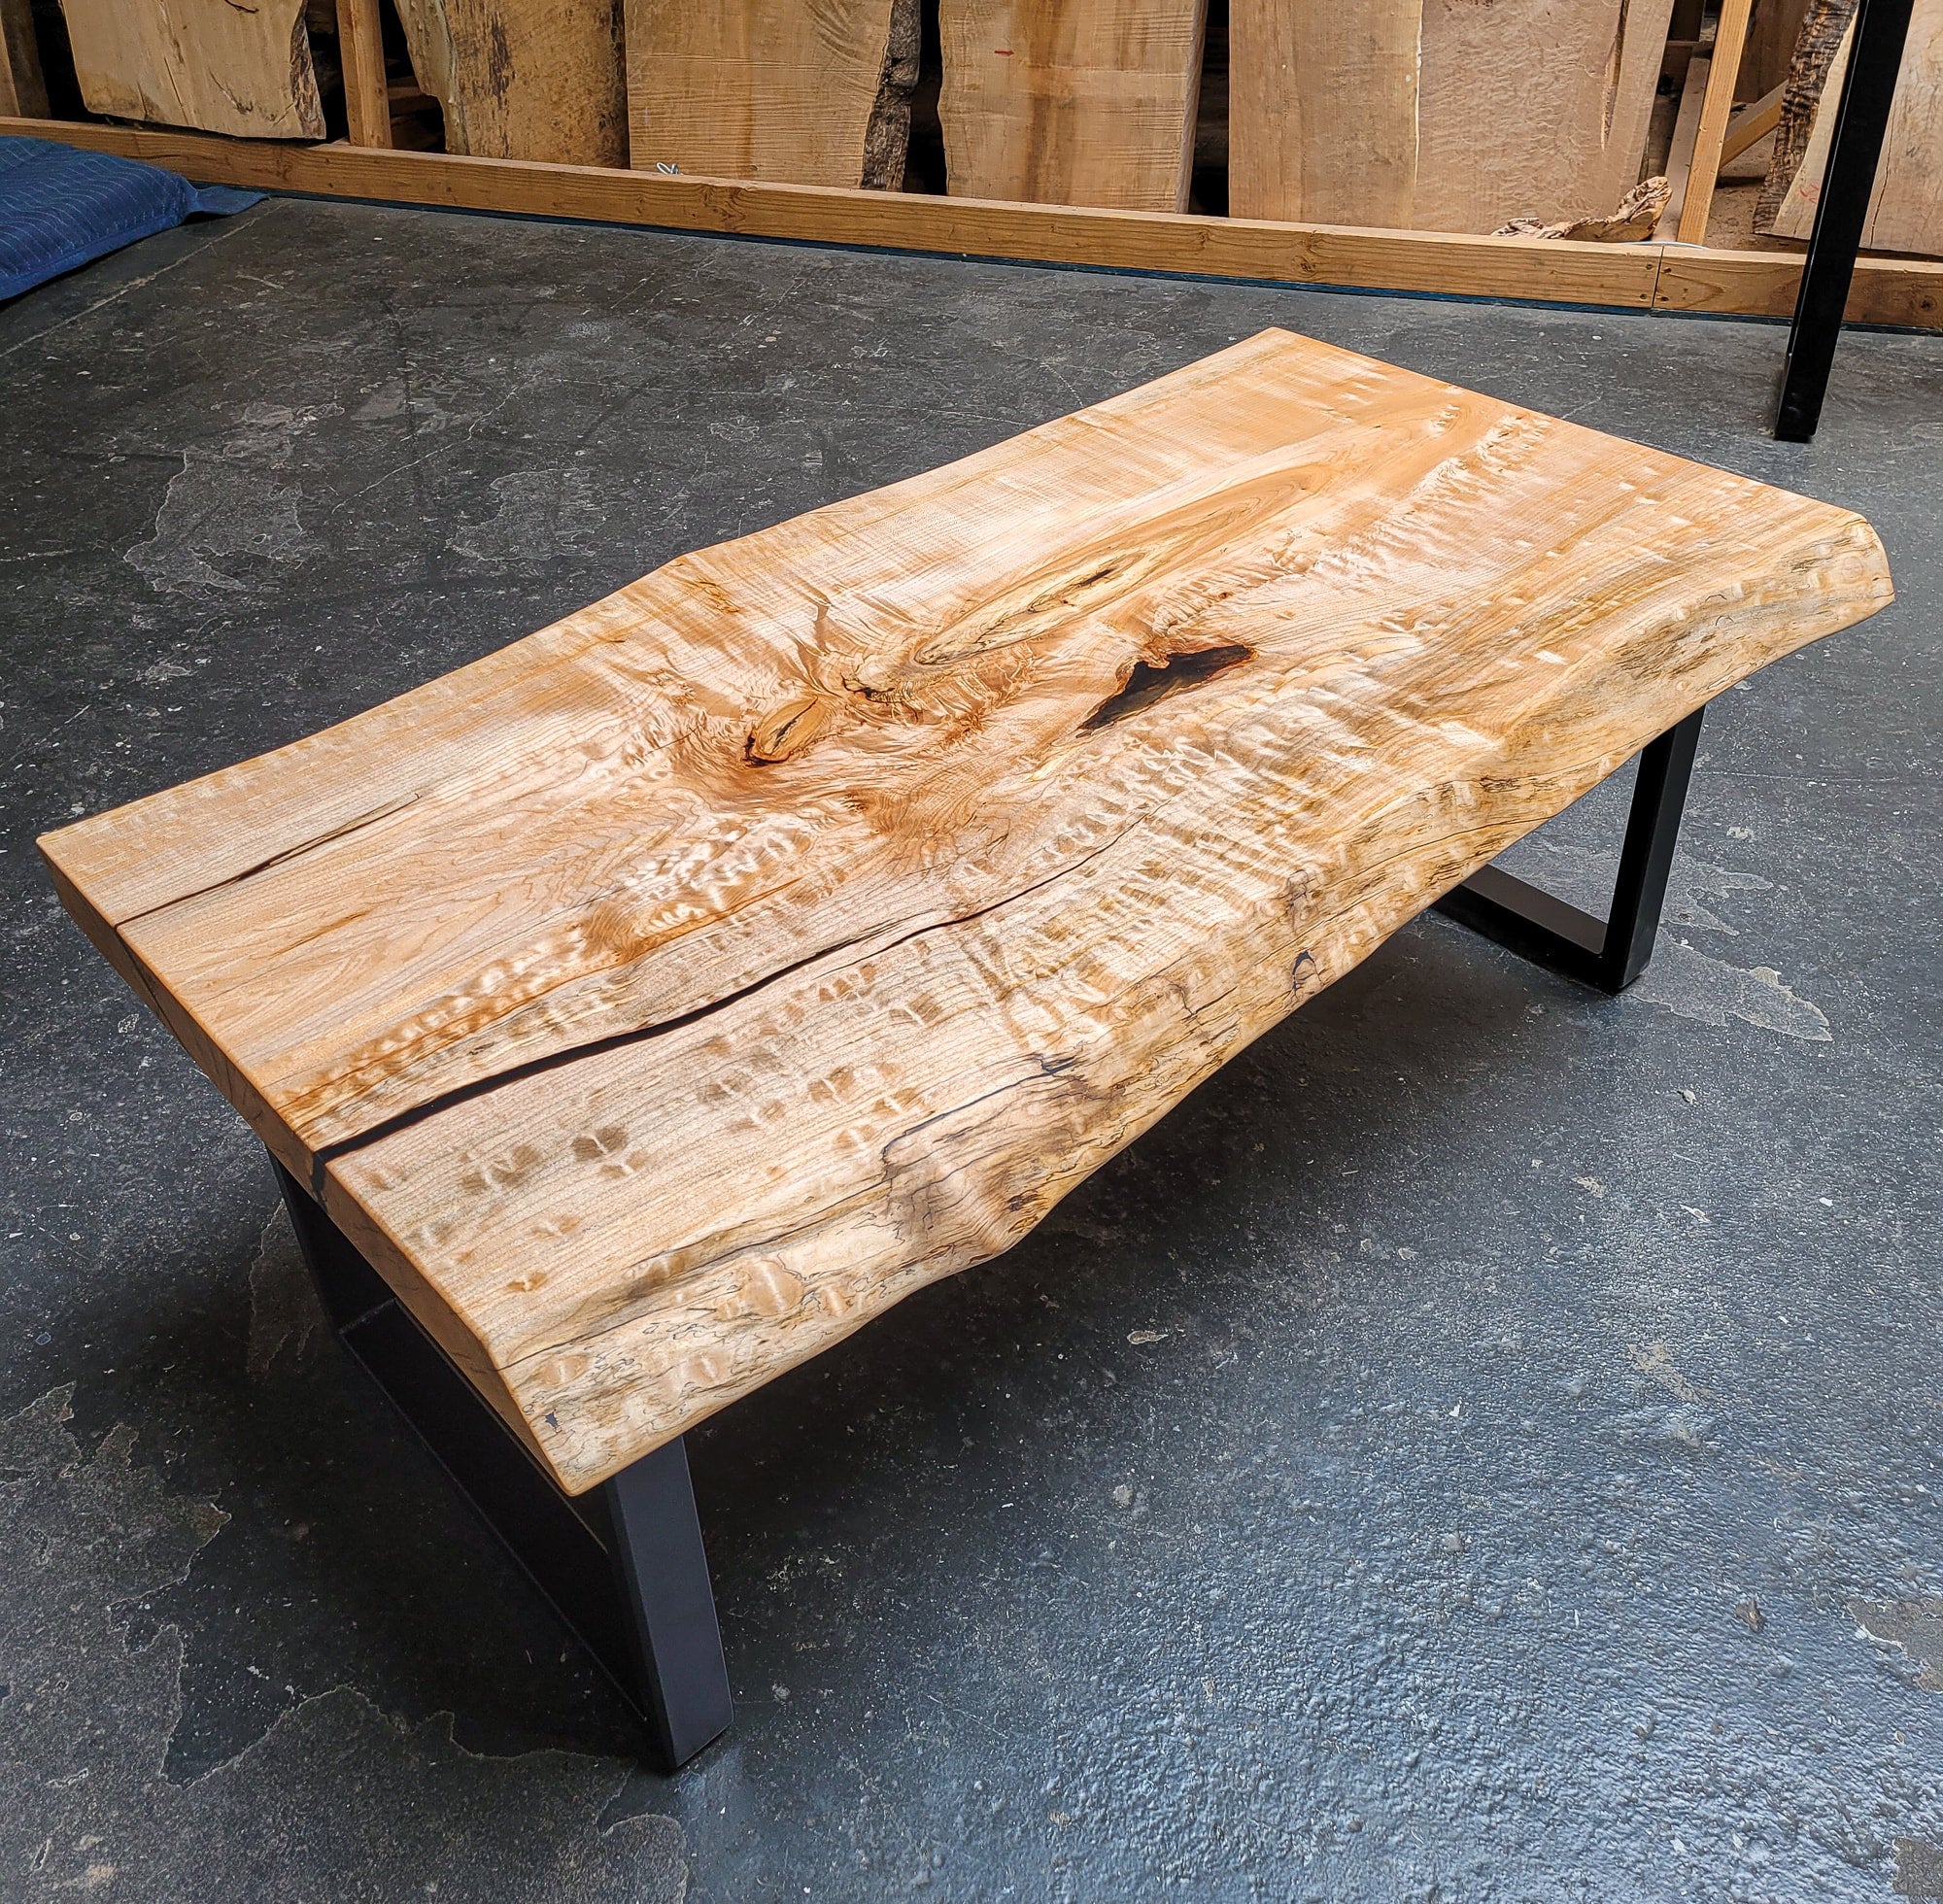 Figured Maple Live Edge Wood Coffee Table